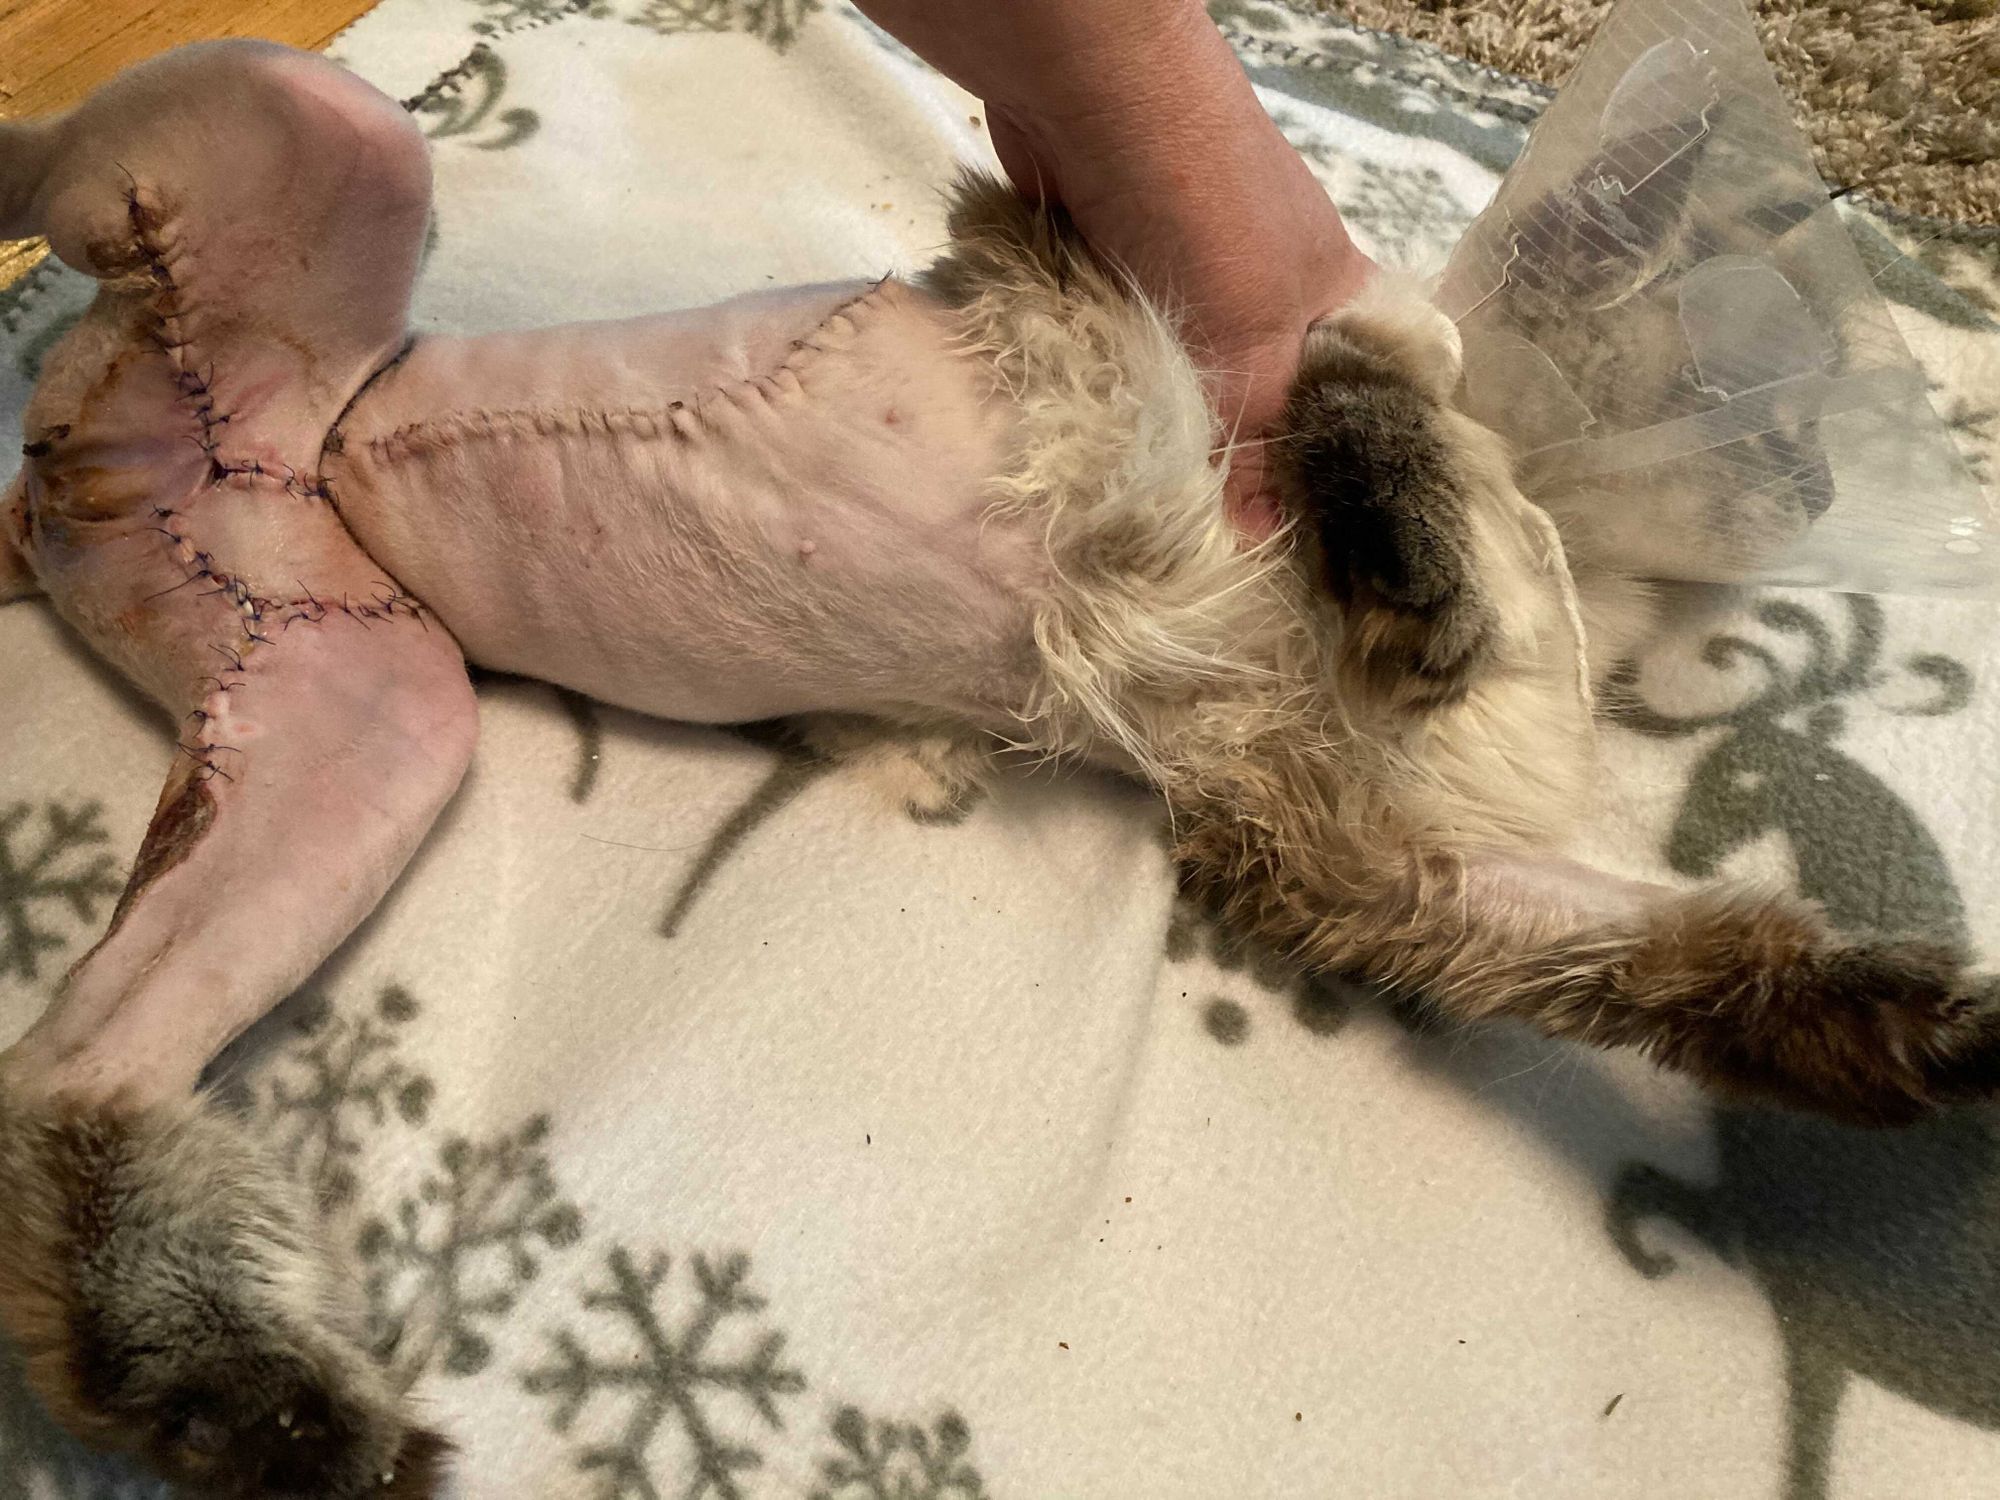 Hoitovirhe Kouvolan Eläinsairaalassa - vakavia palovammoja kissalle